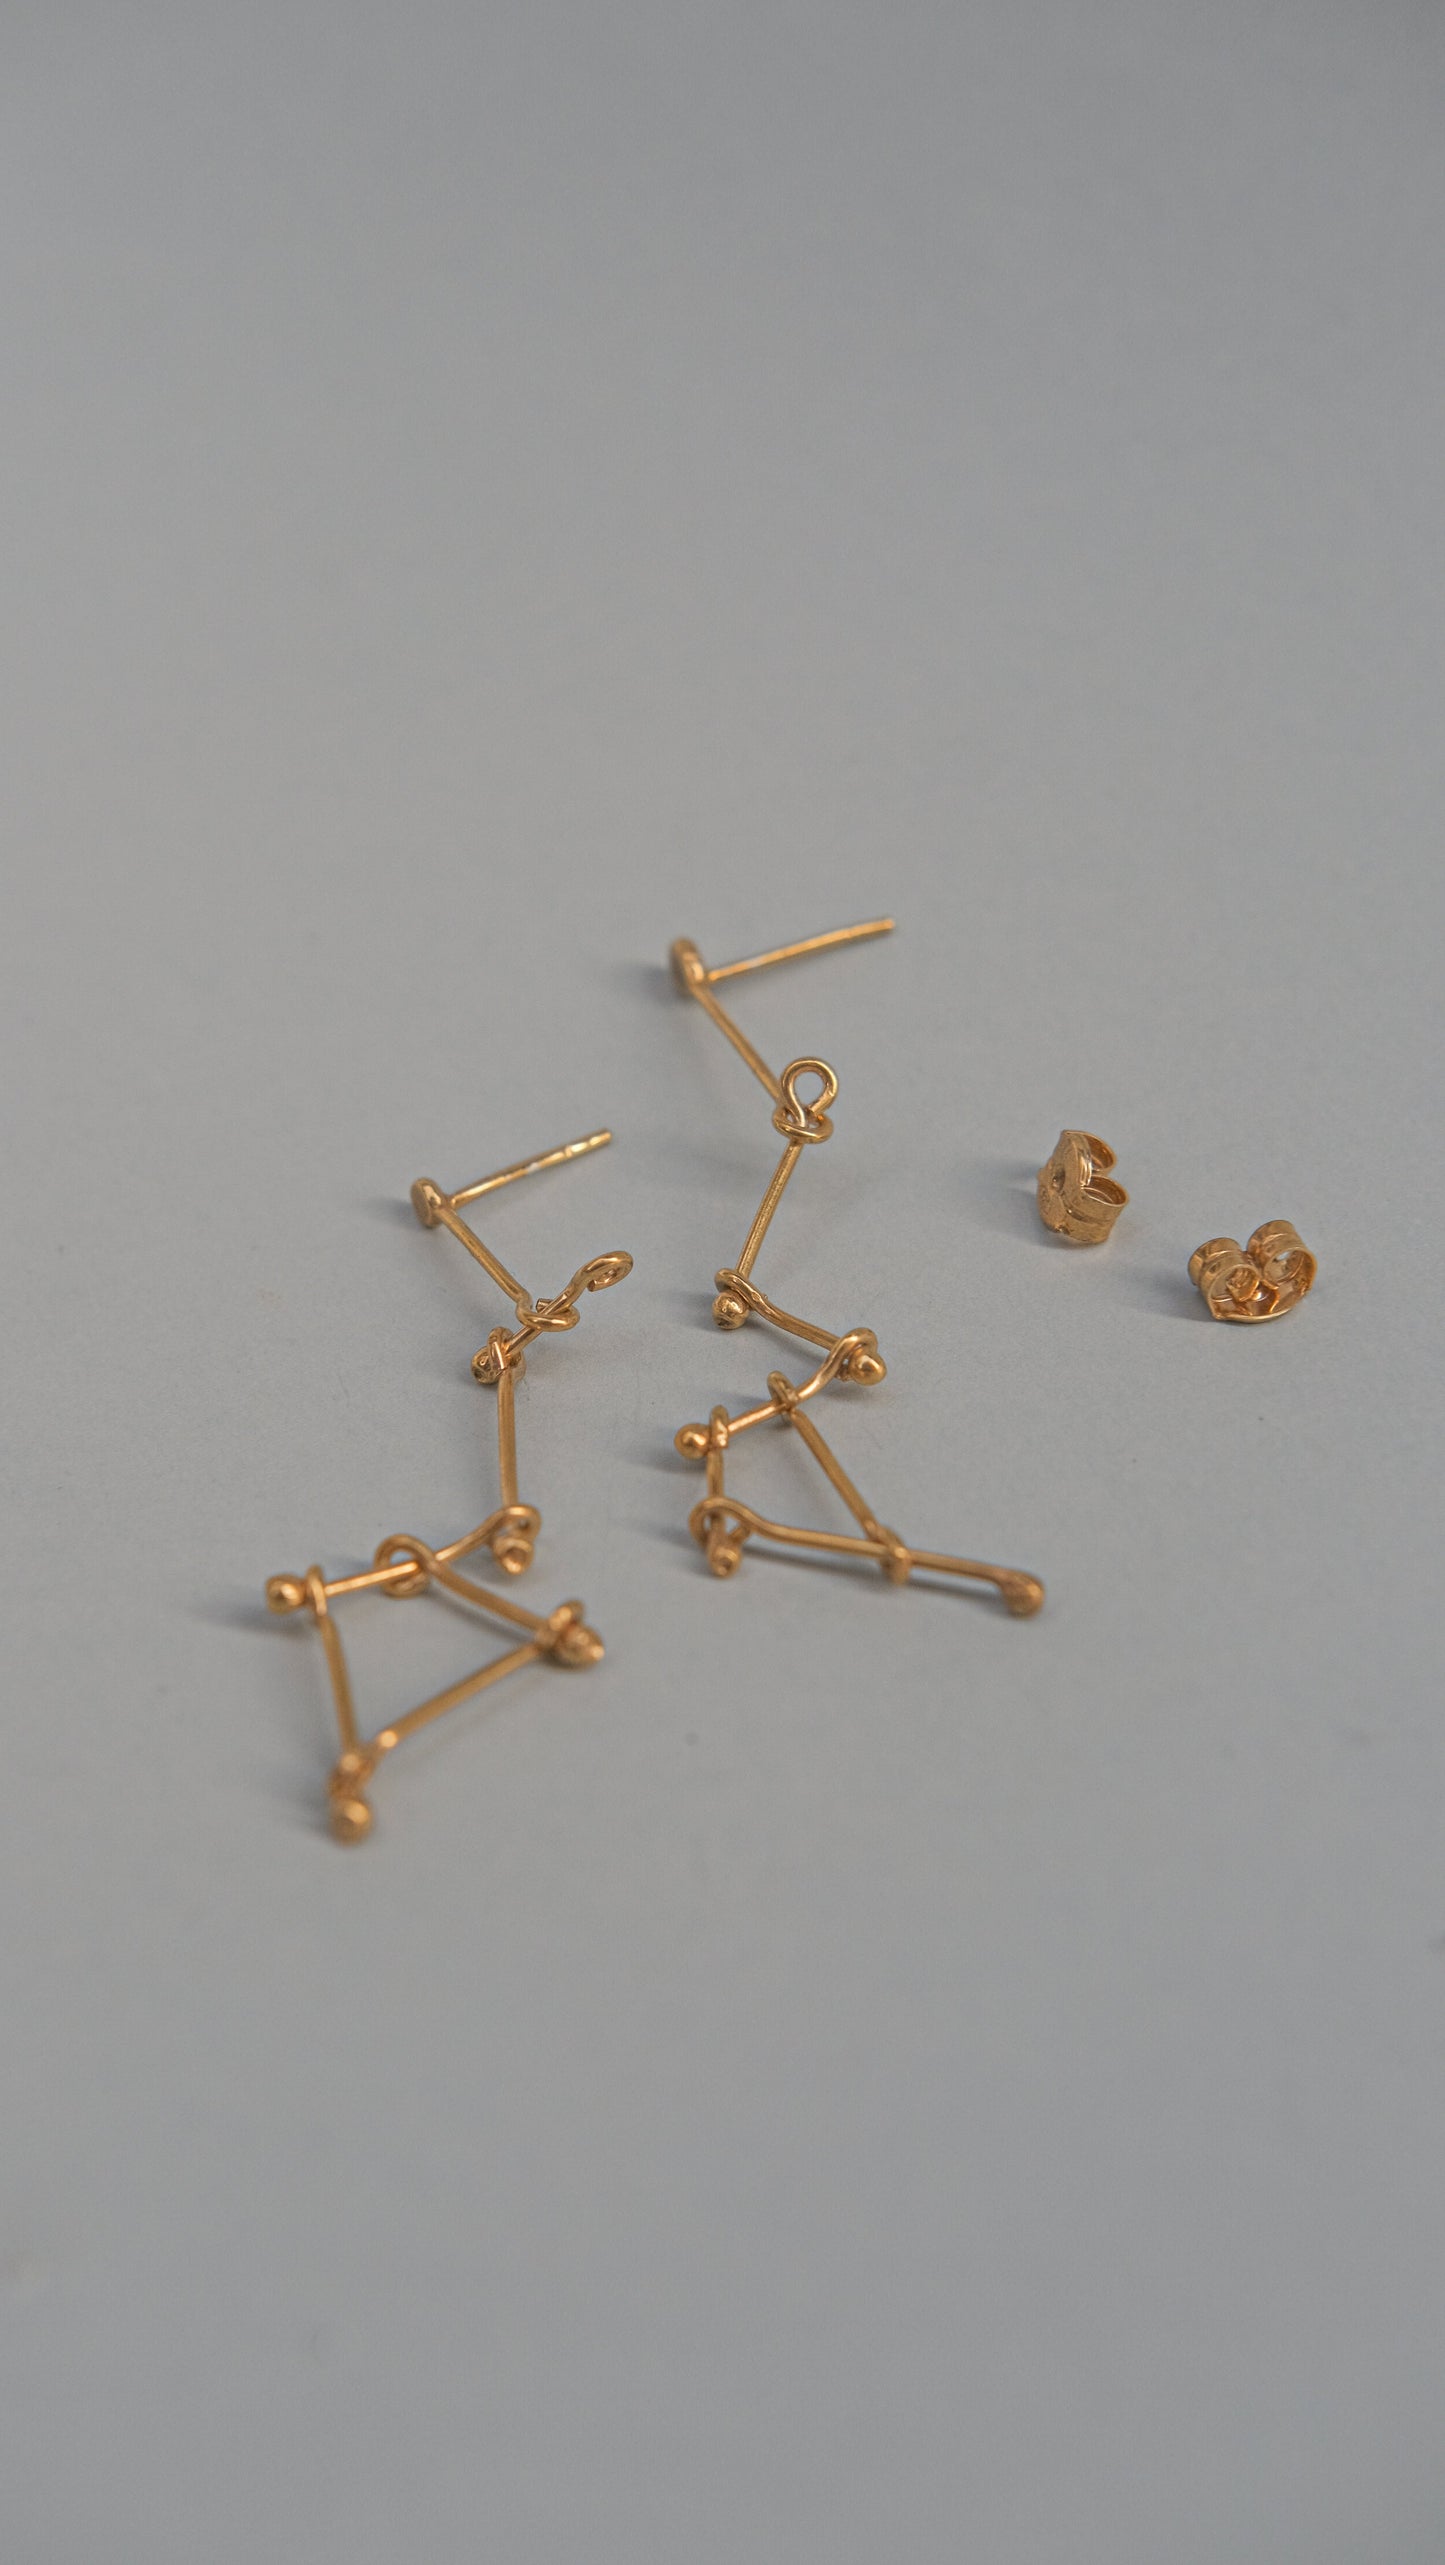 Constel·lacions carro golden earrings